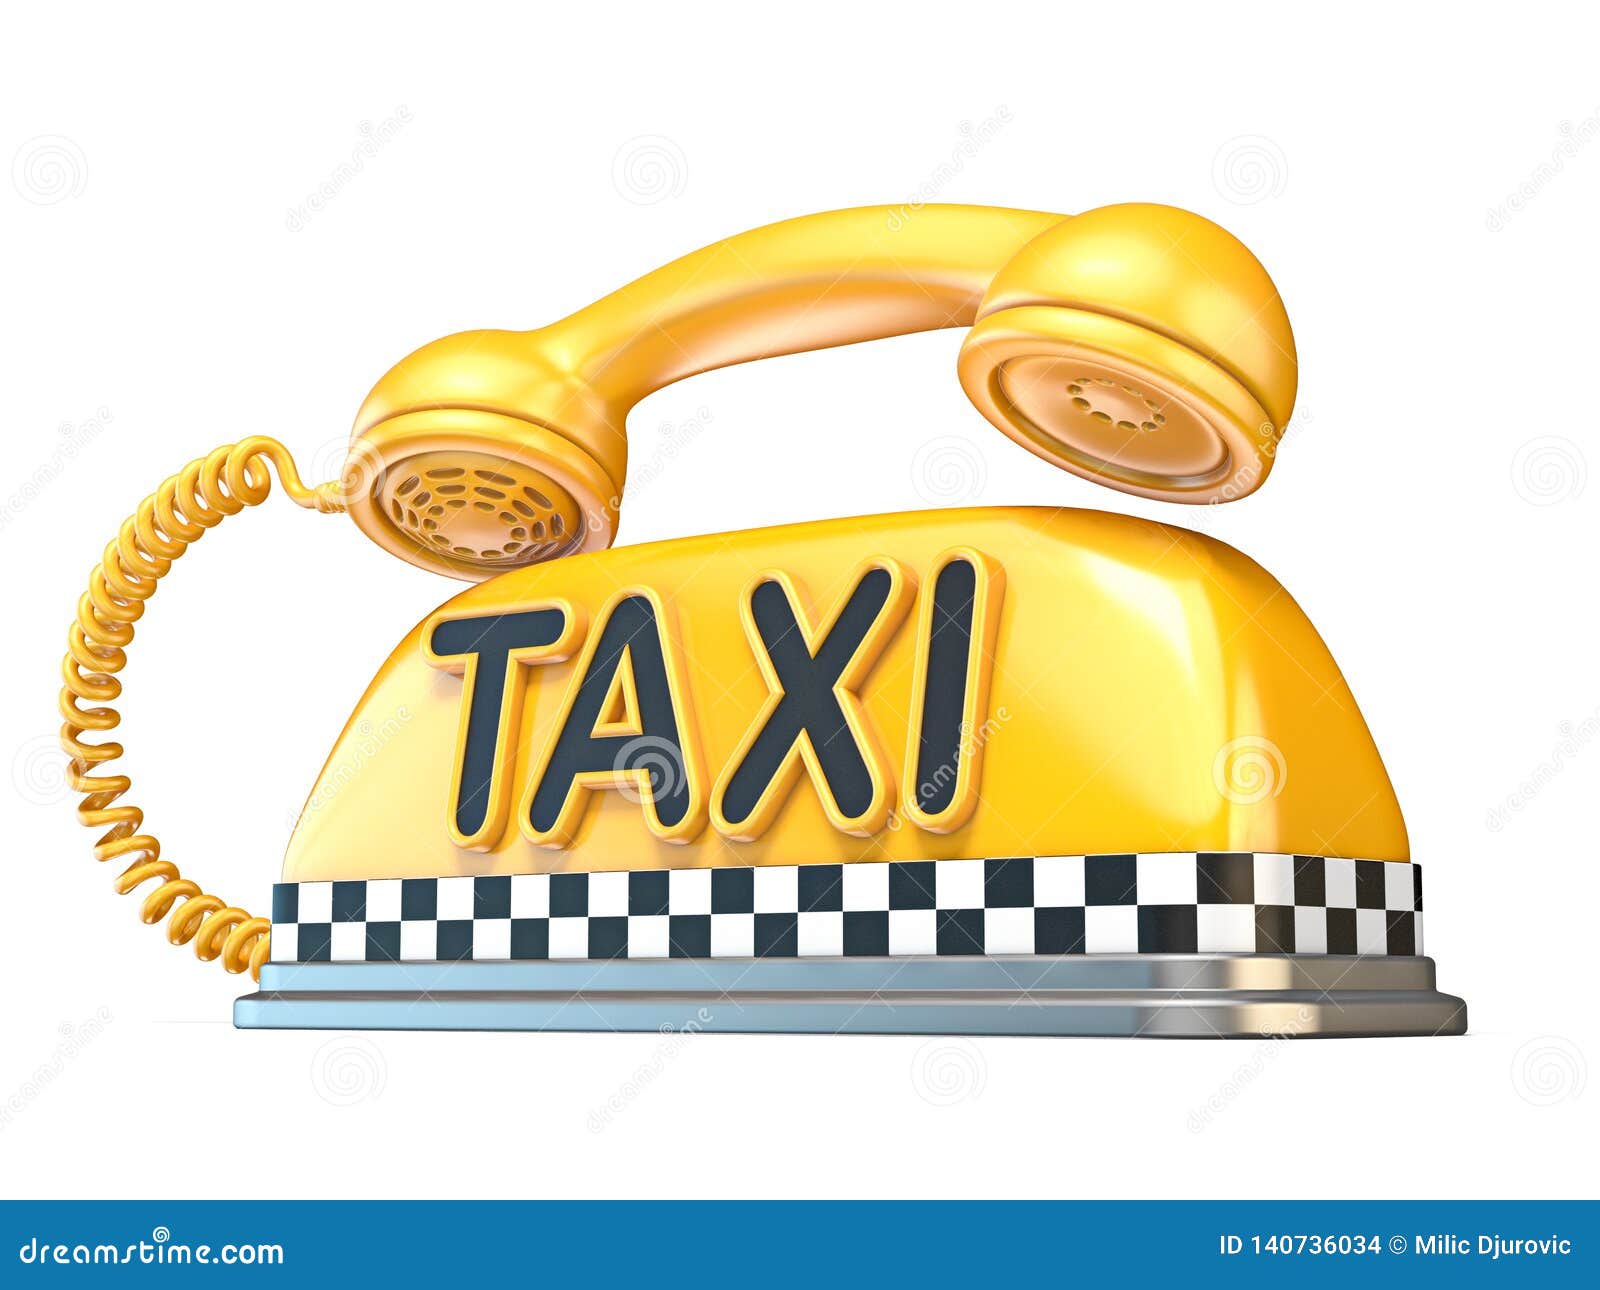 Вызов такси без телефона